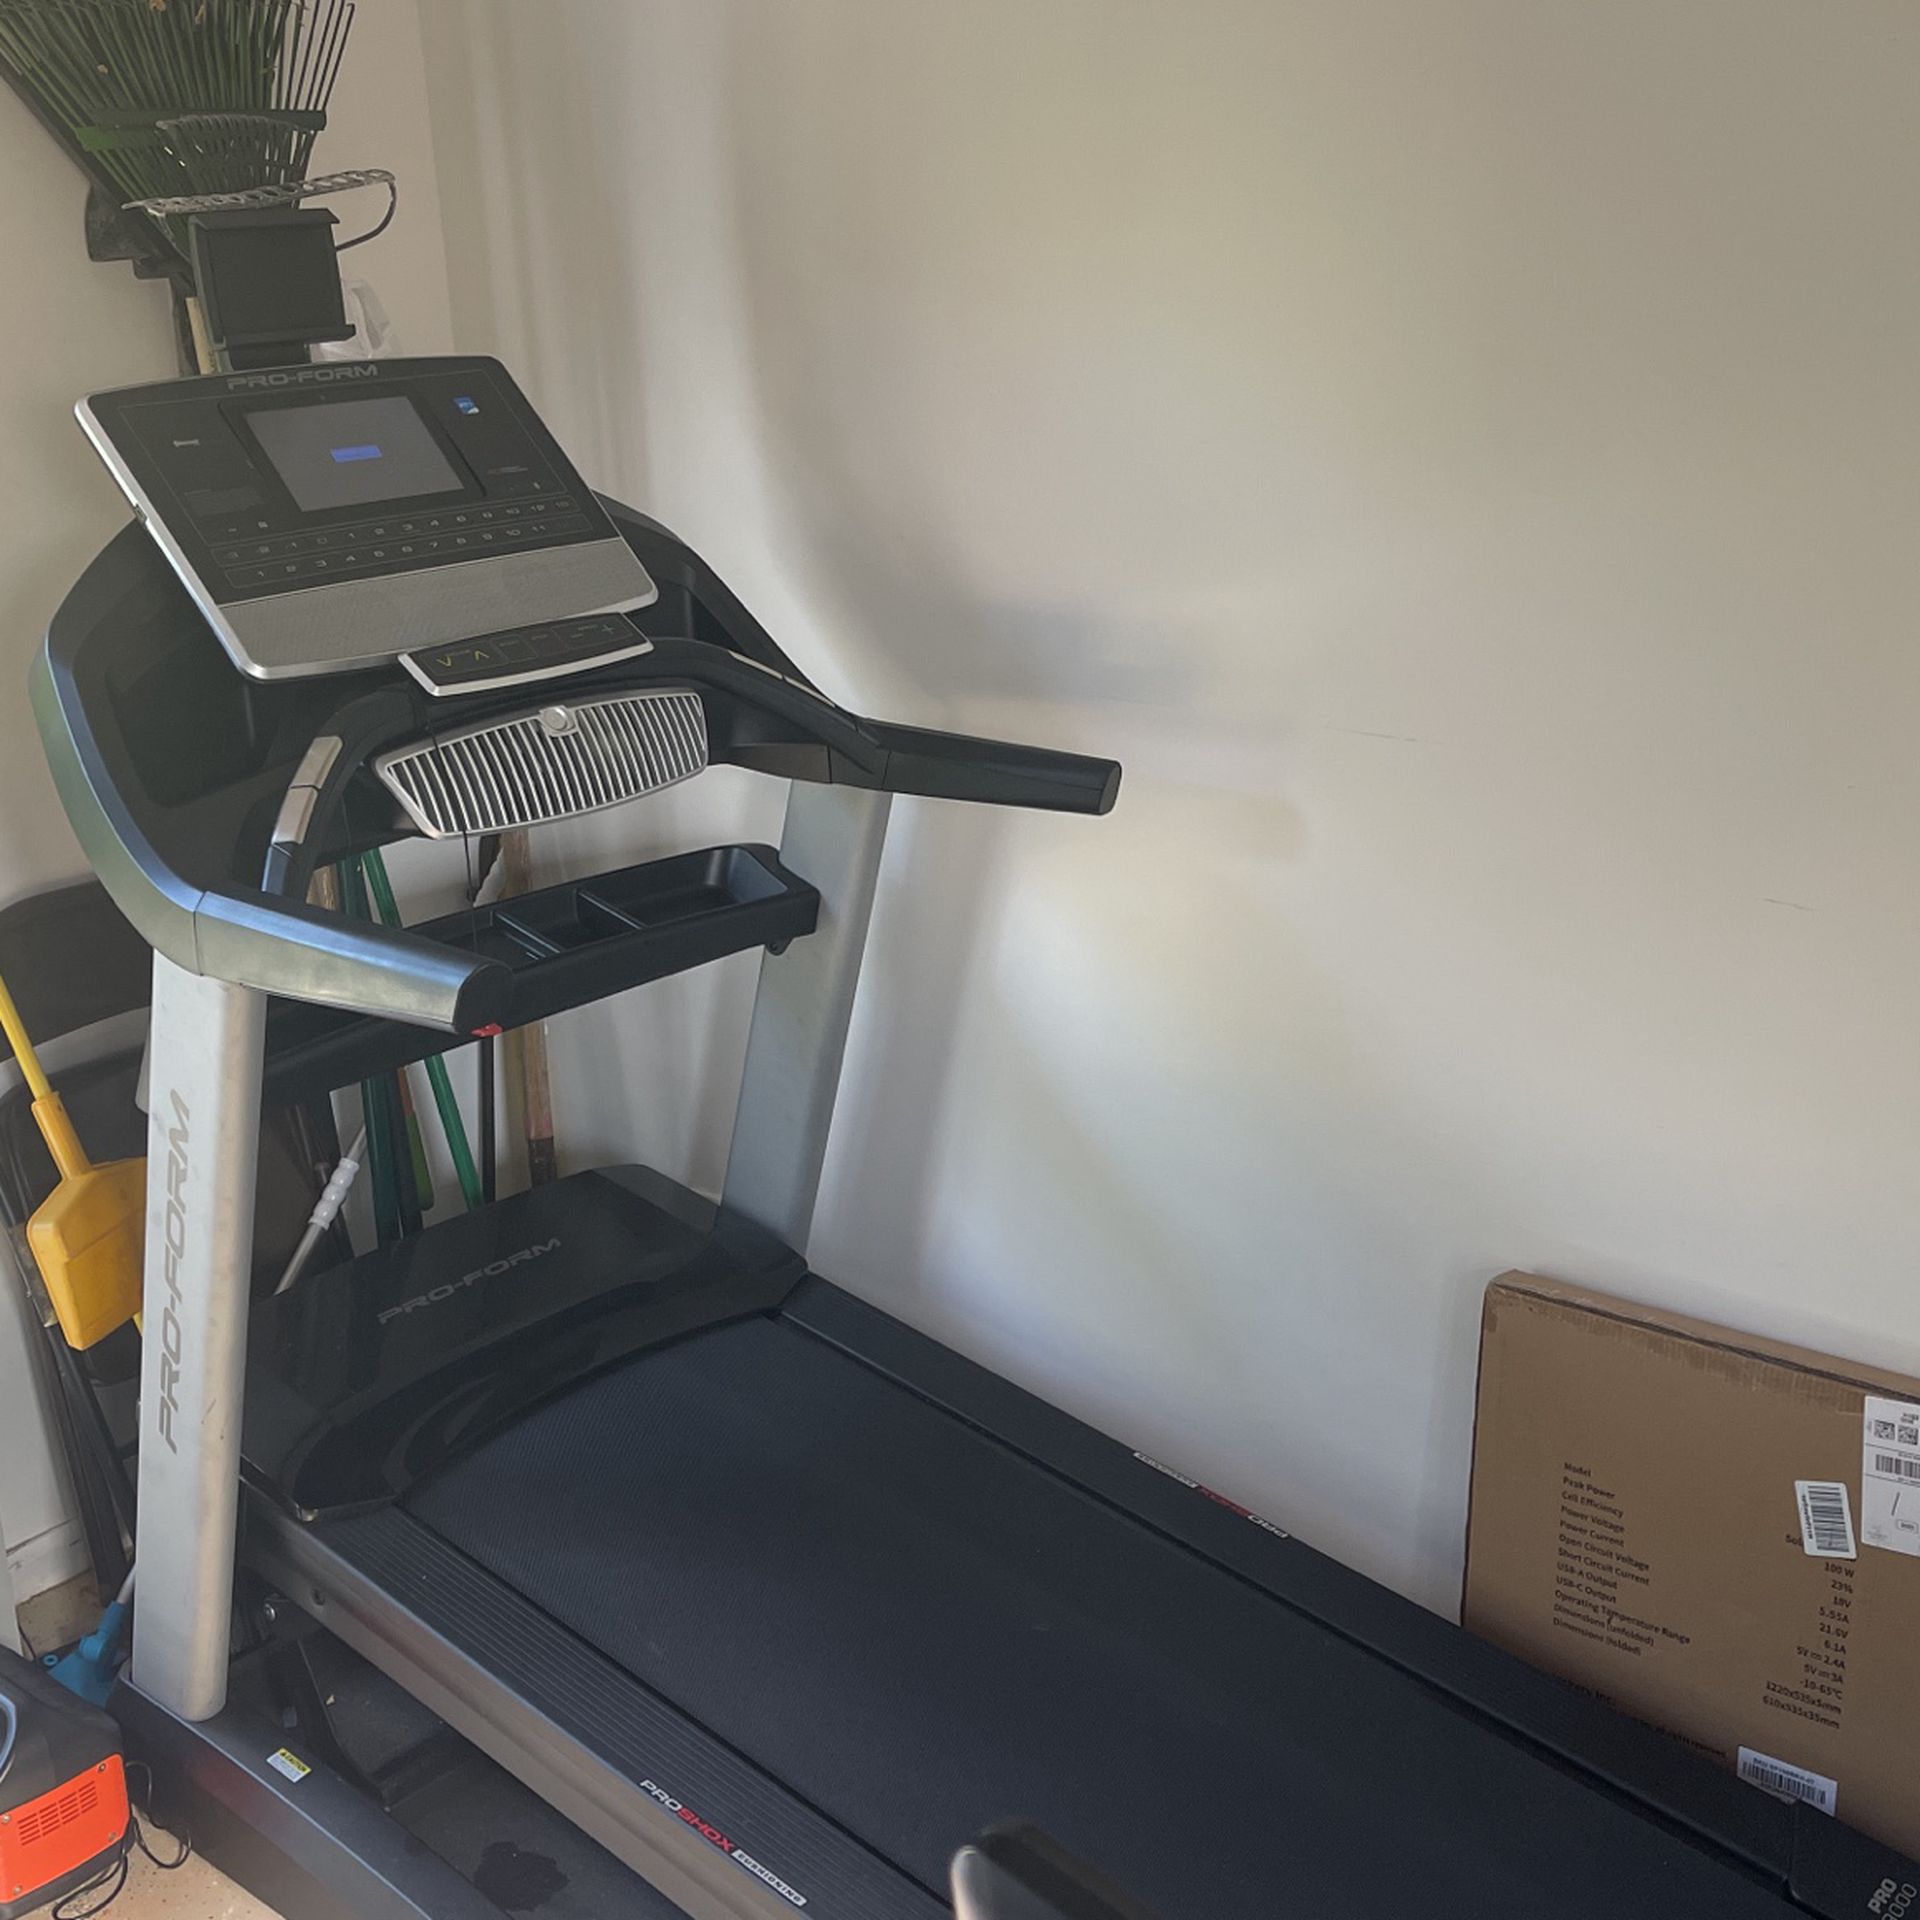 Pro-Form Treadmill 